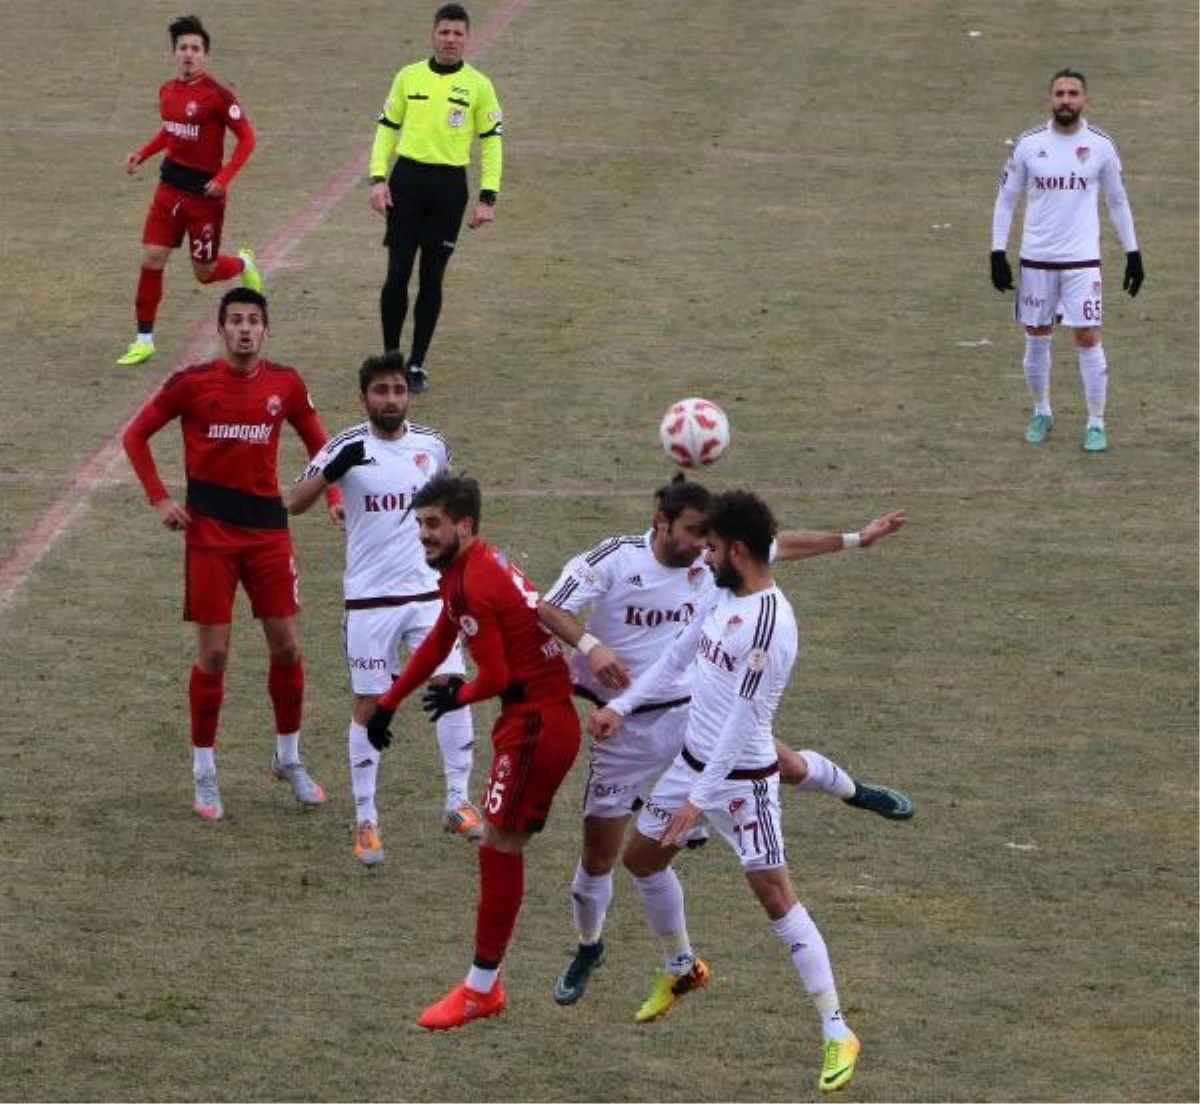 Anagold 24erzincanspor-Elazığspor: 3-2 (Ziraat Türkiye Kupası)